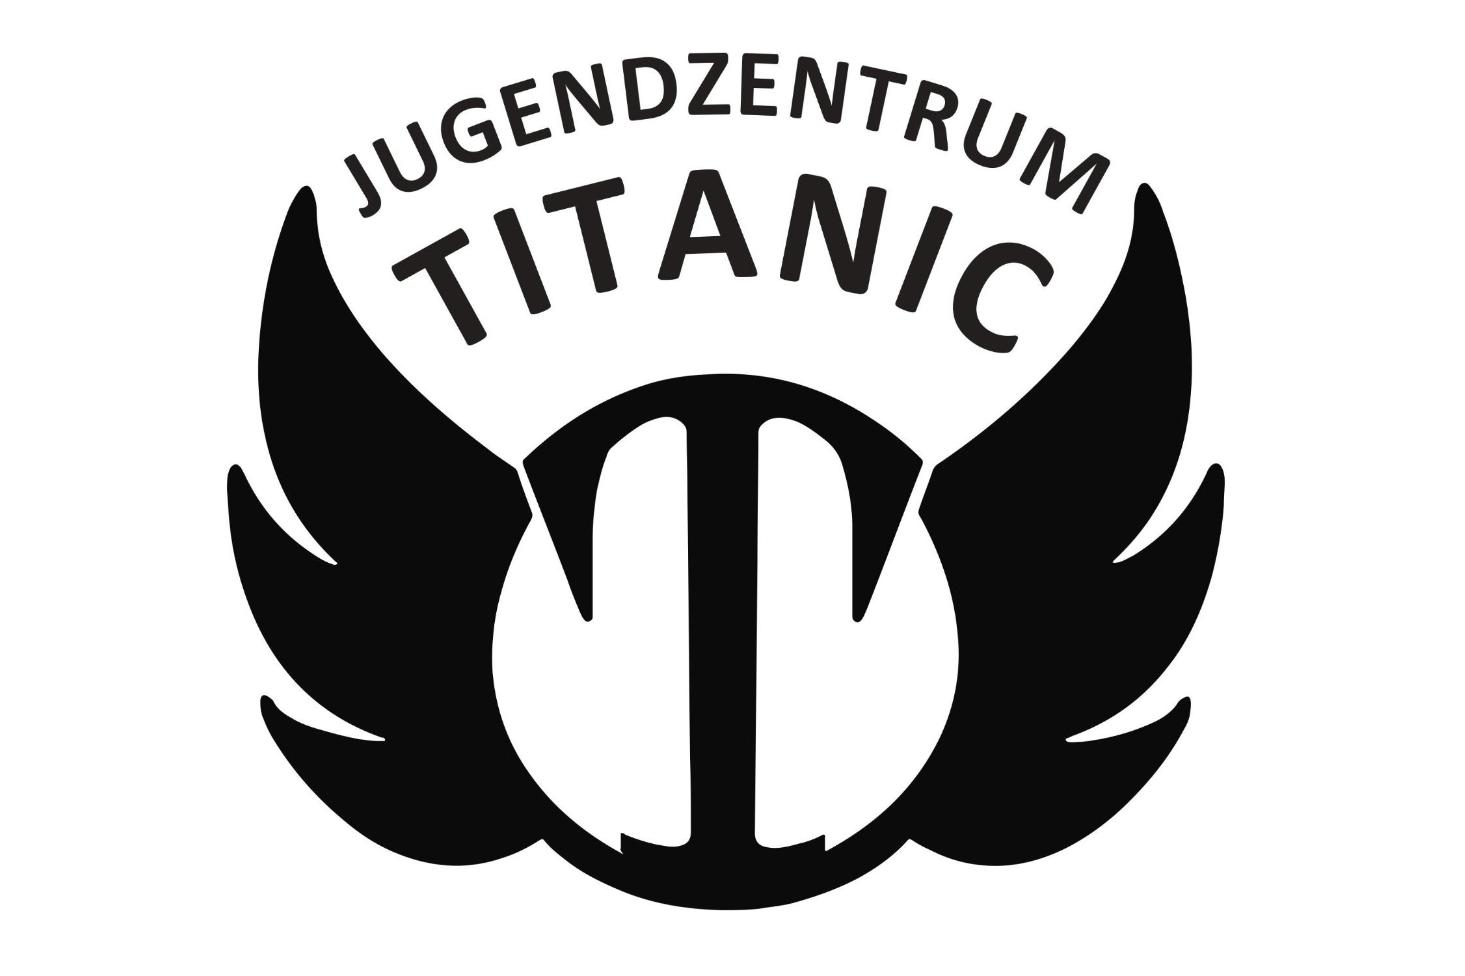 Titanic logo (c) Jugendzentrum TITANIC